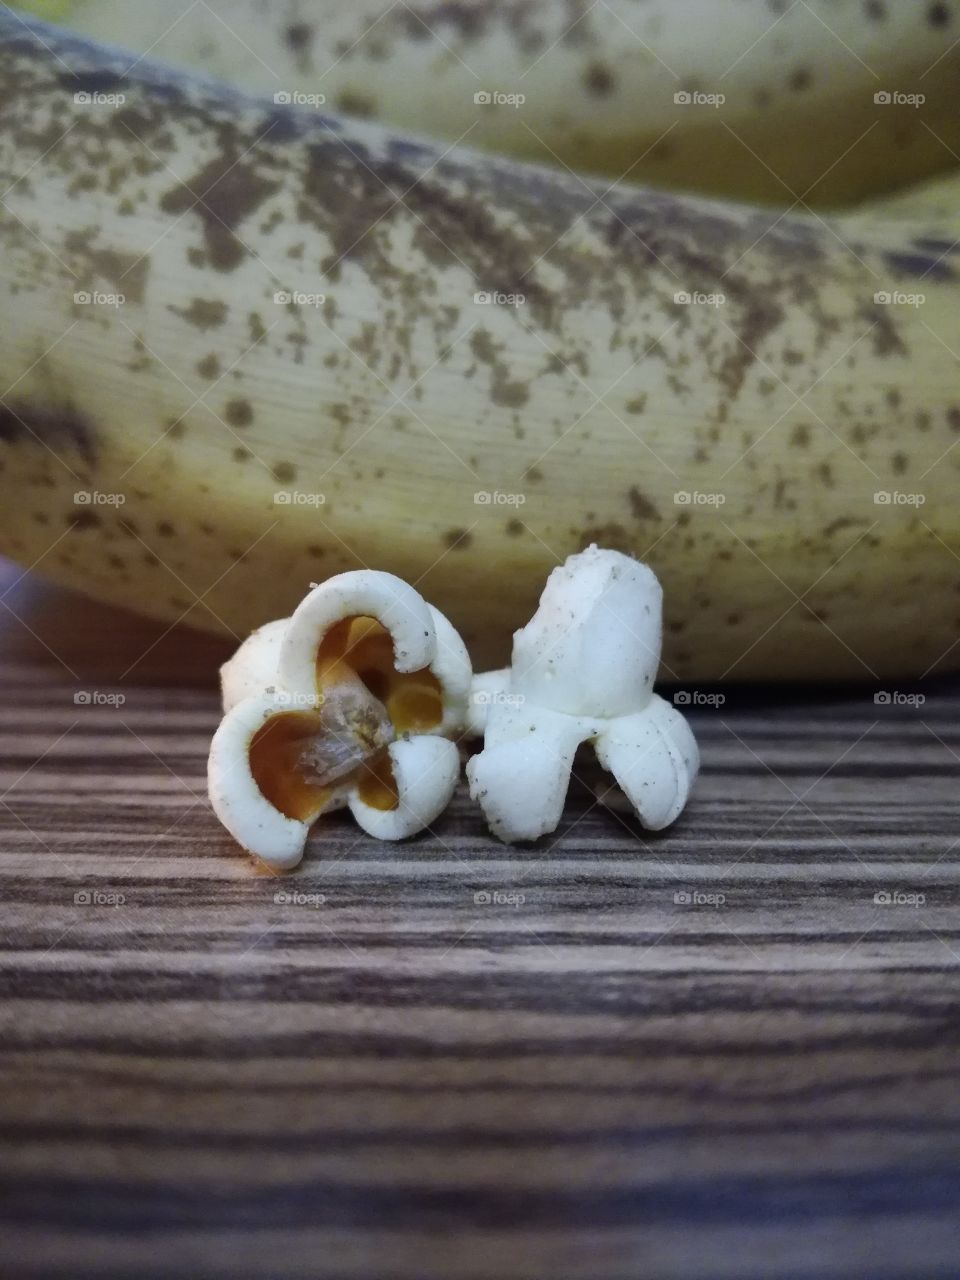 Popcorn and bananas